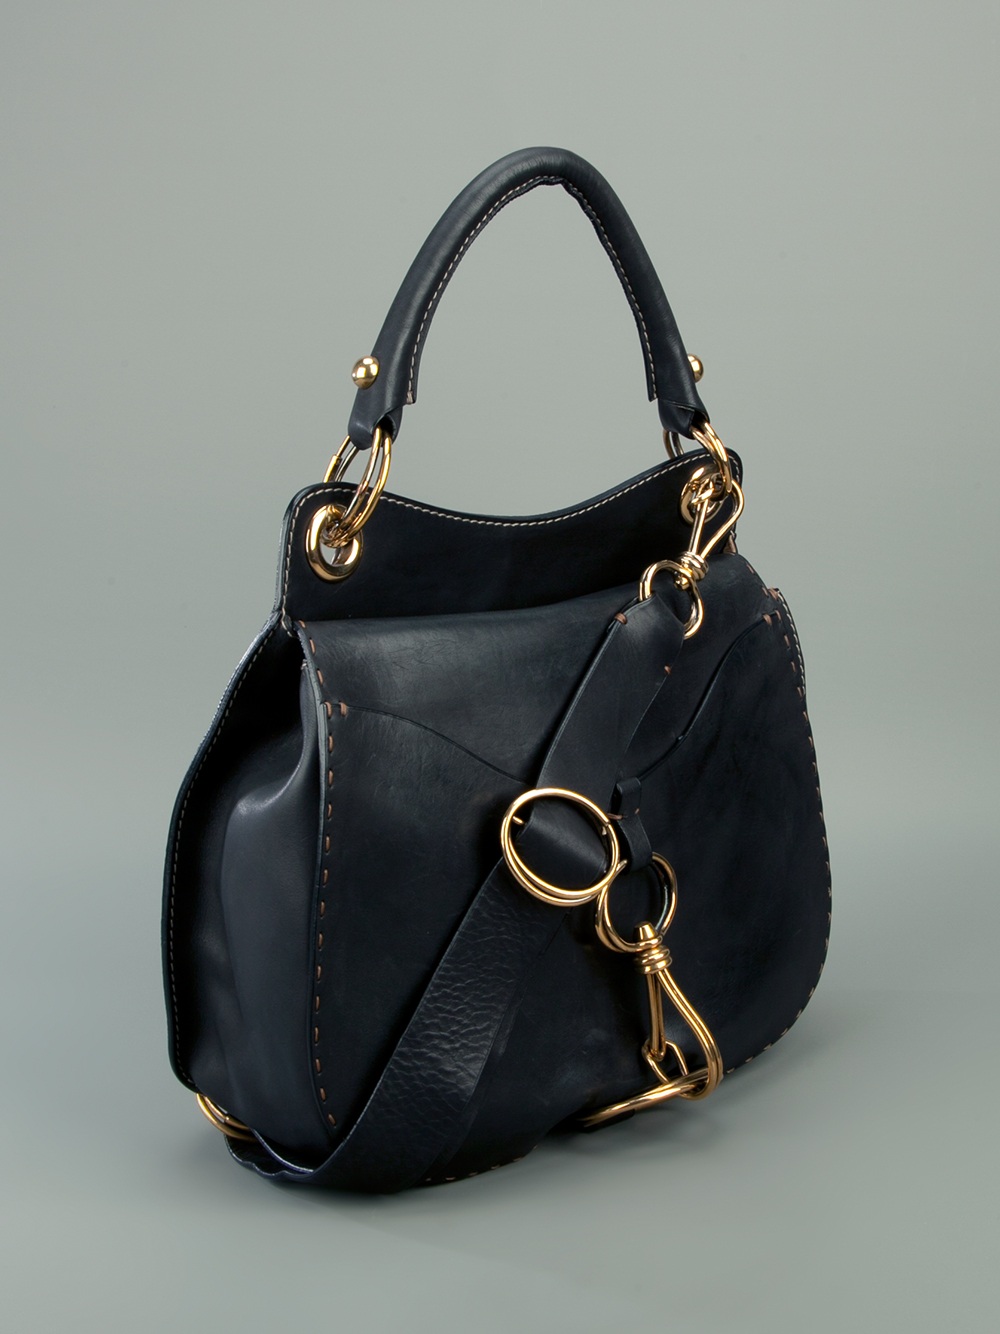 DKNY Donna Karan Black Rigid Patent Leather Shoulder Bag